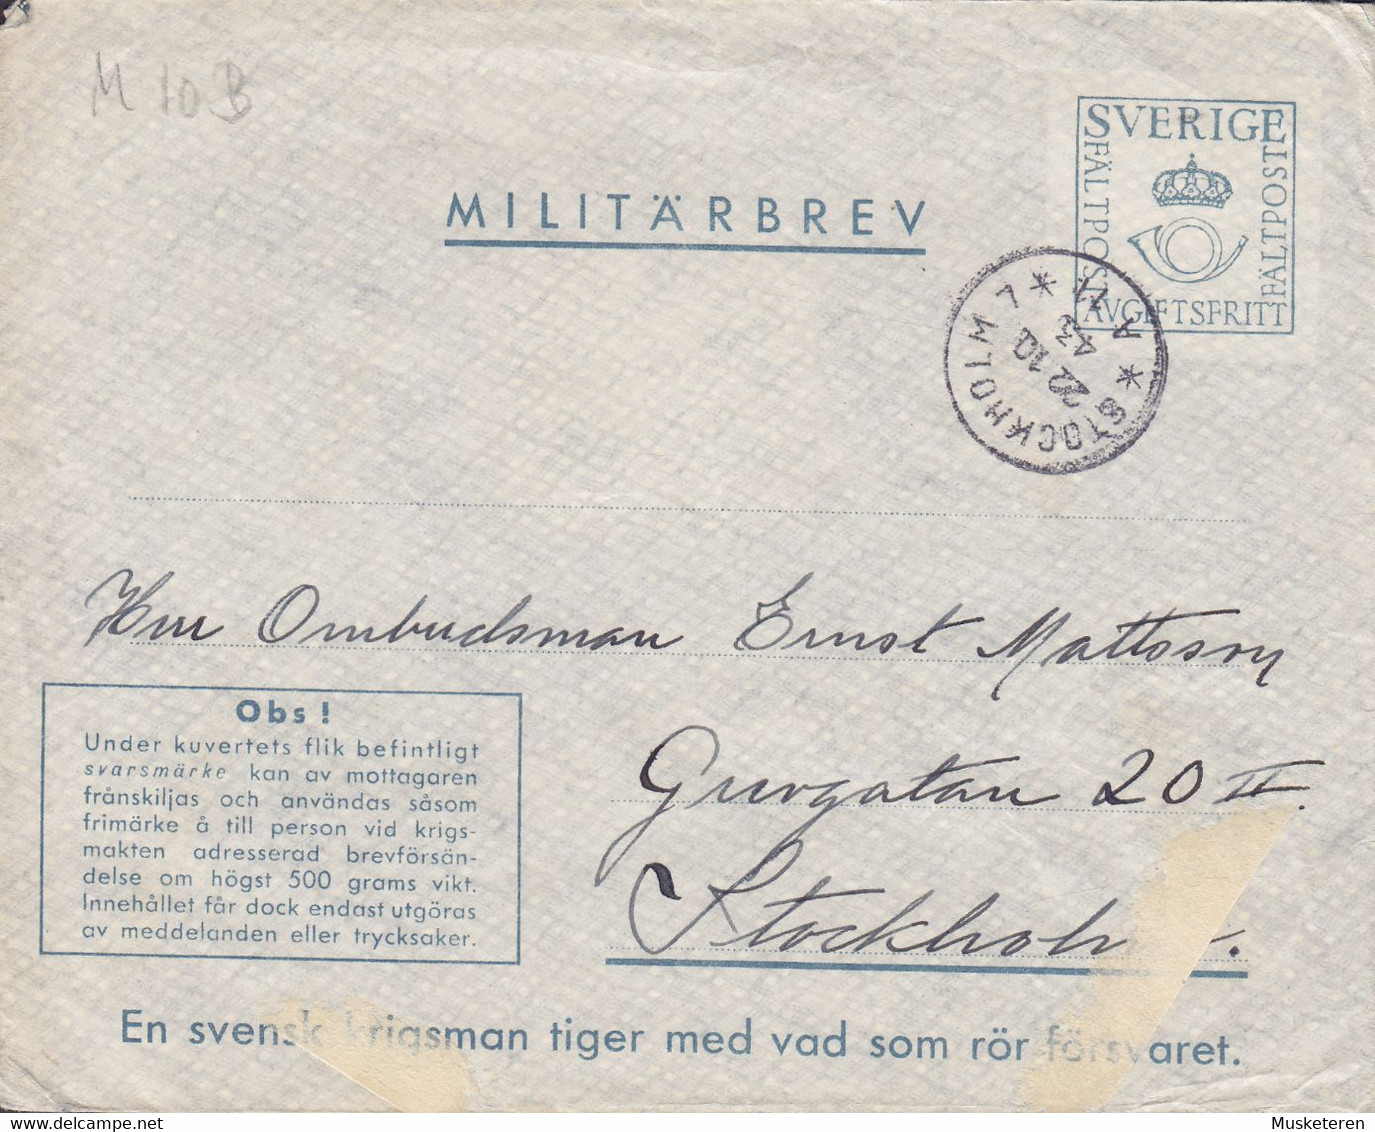 Sweden Feldpost Fieldpost Militärbrev M10B STOCKHOLM 1943 Cover Brief (2 Scans) - Military